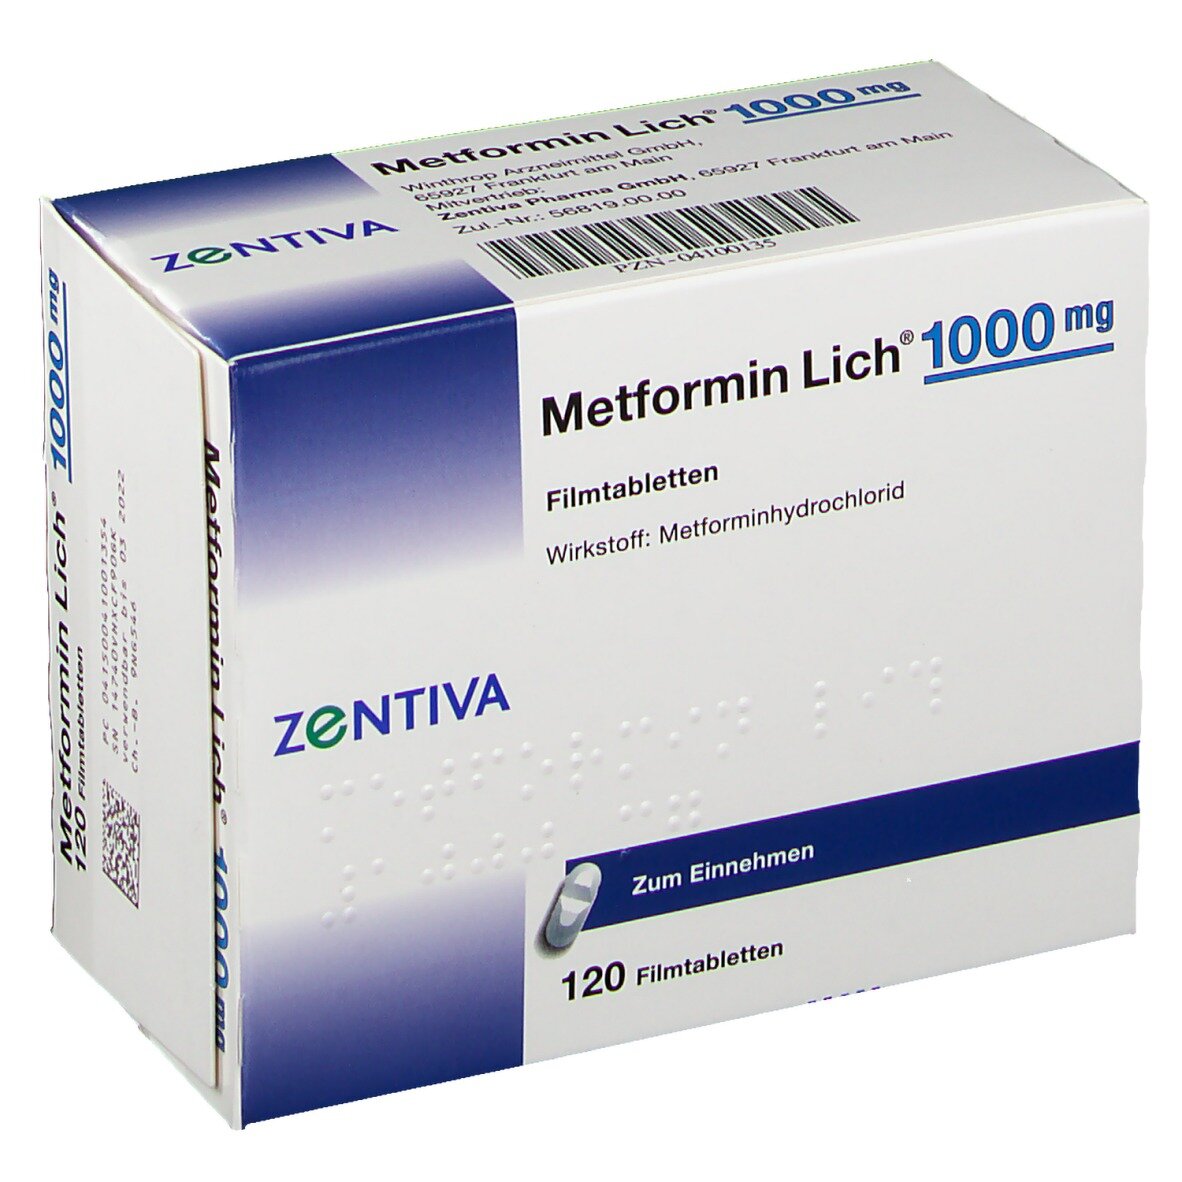 Метформин отзывы людей. Метформин 500. Метформин 500 мг синяя упаковка. Метформин 1000. Метформин 1000 мг.